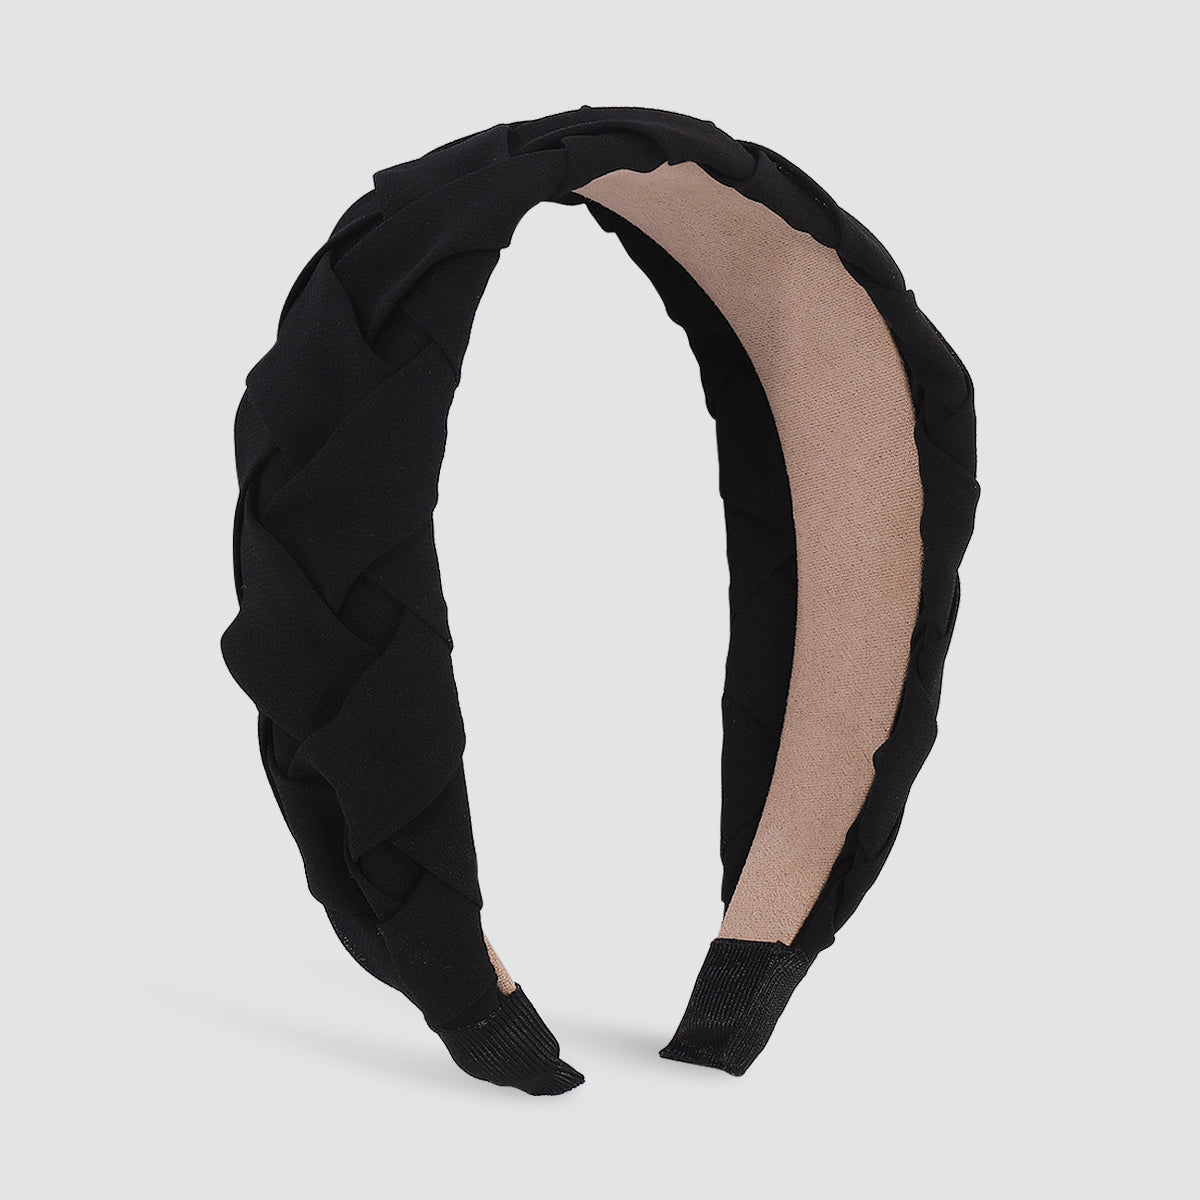 Twist Braid Wide Headbands medyjewelry